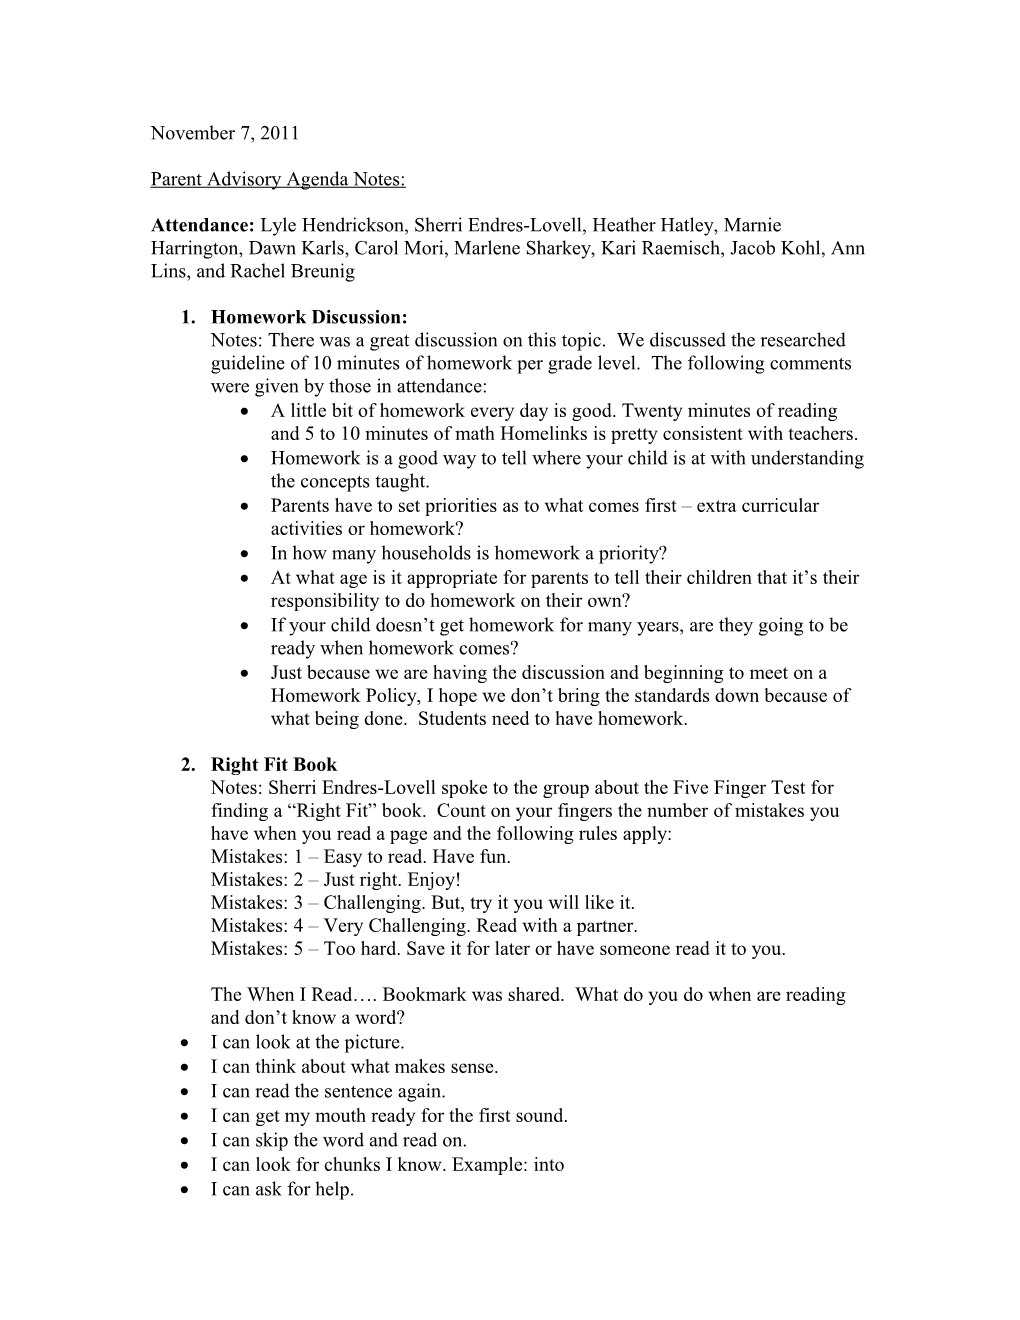 Parent Advisory Agenda Notes